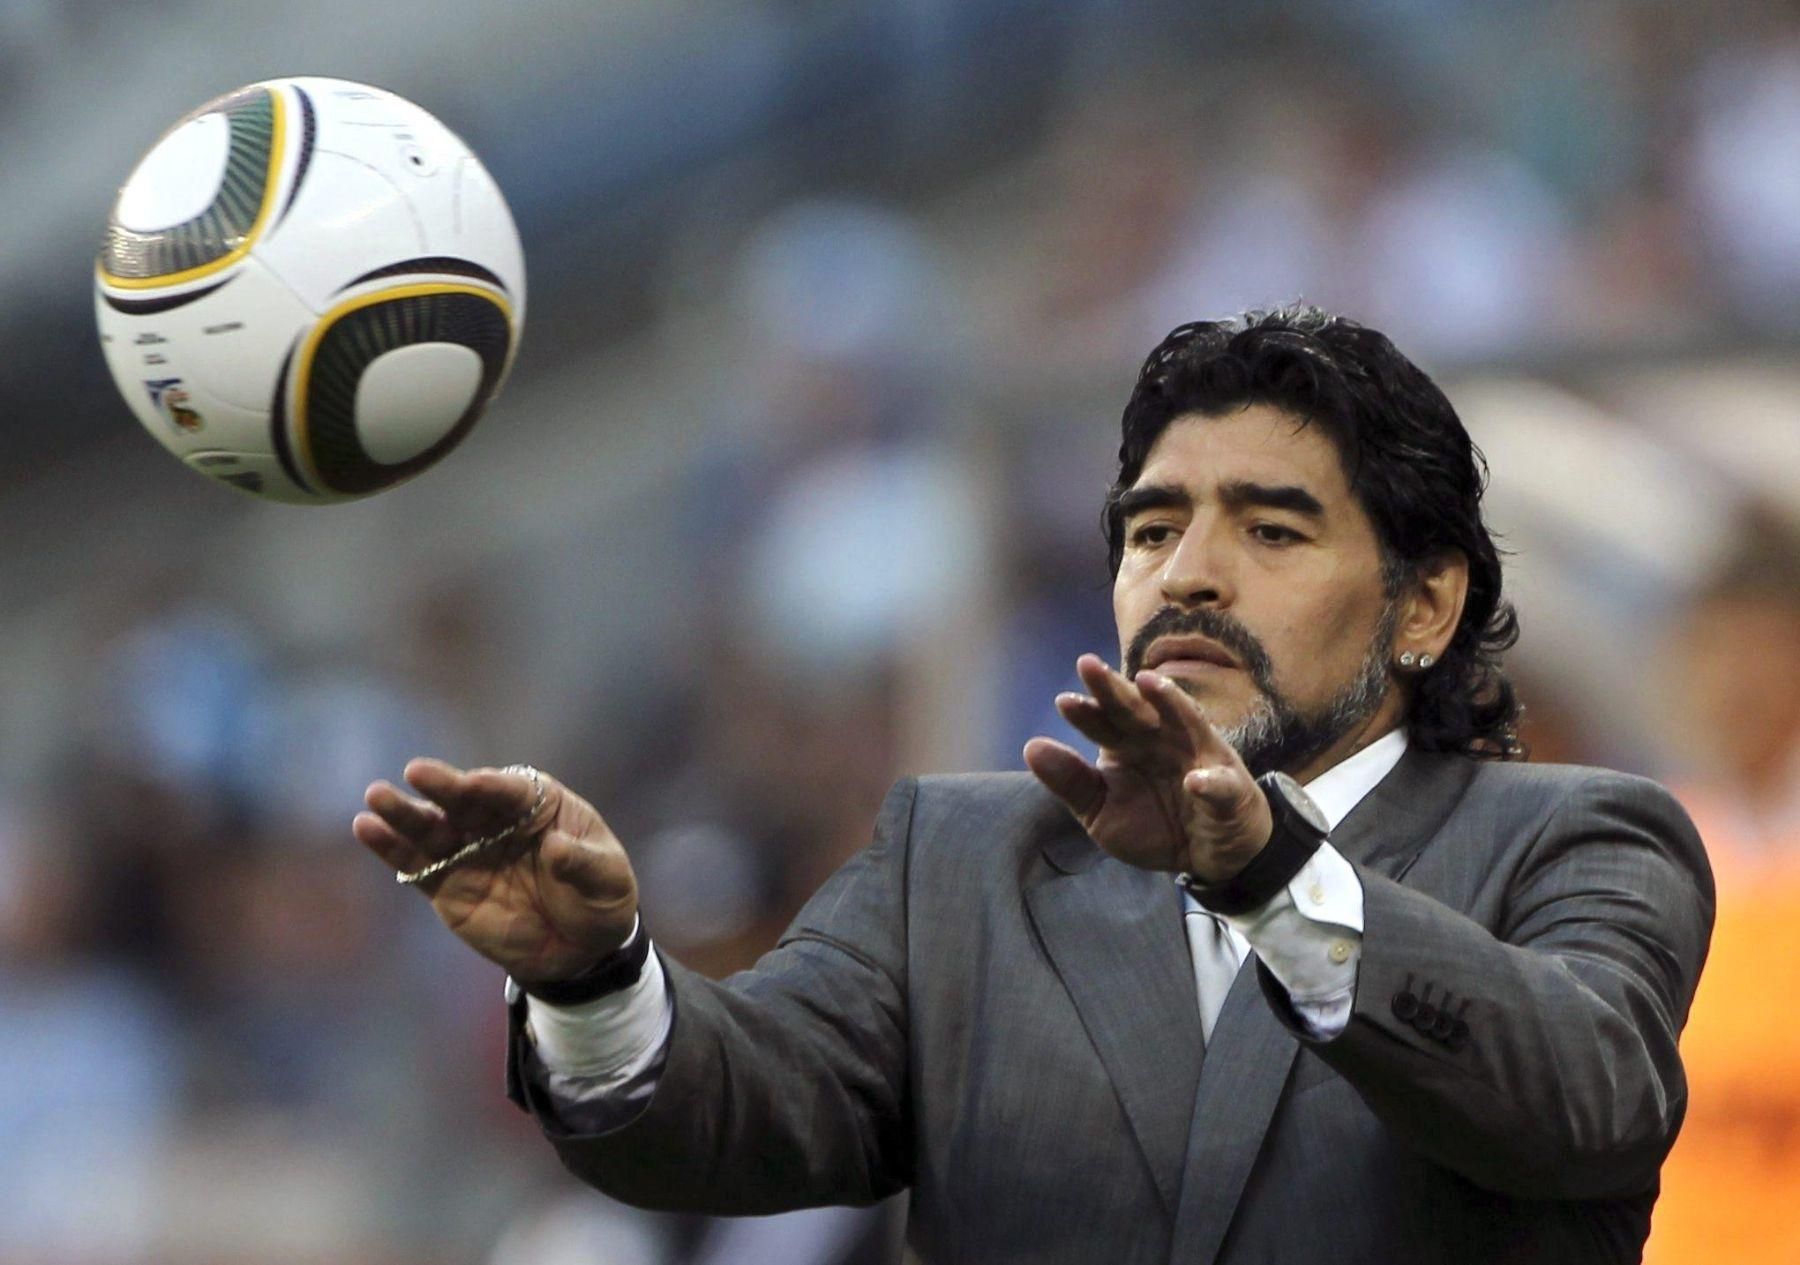 Марадона негативно отозвался о судействе в матче Колумбия – Англия